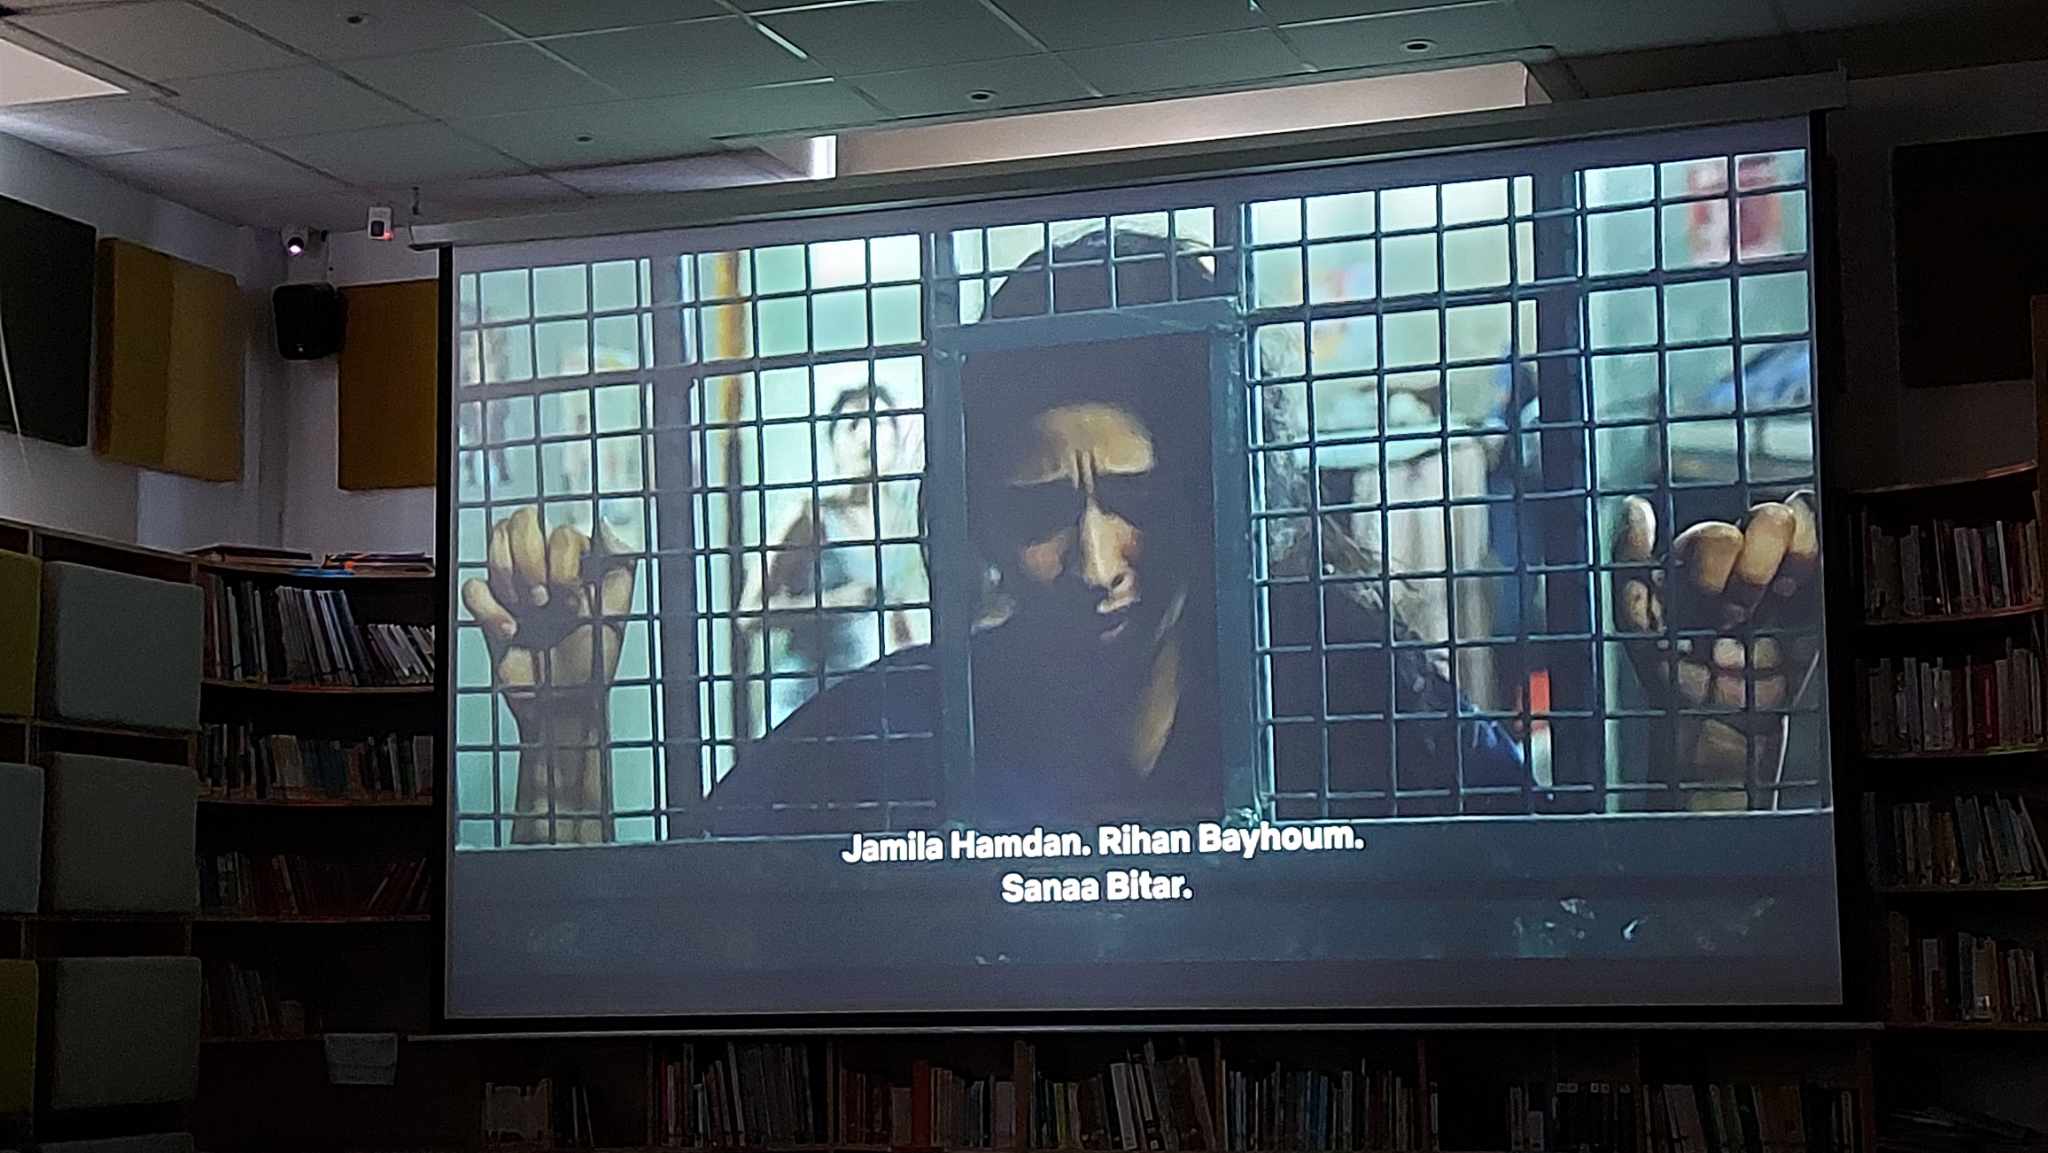 بمناسبة اليوم العالمي لحقوق الانسان: عرض فيلم 3000 ليلة حول الجرائم الحقوقية ضد الفلسطينين في سجون الكيان الصهيوني 